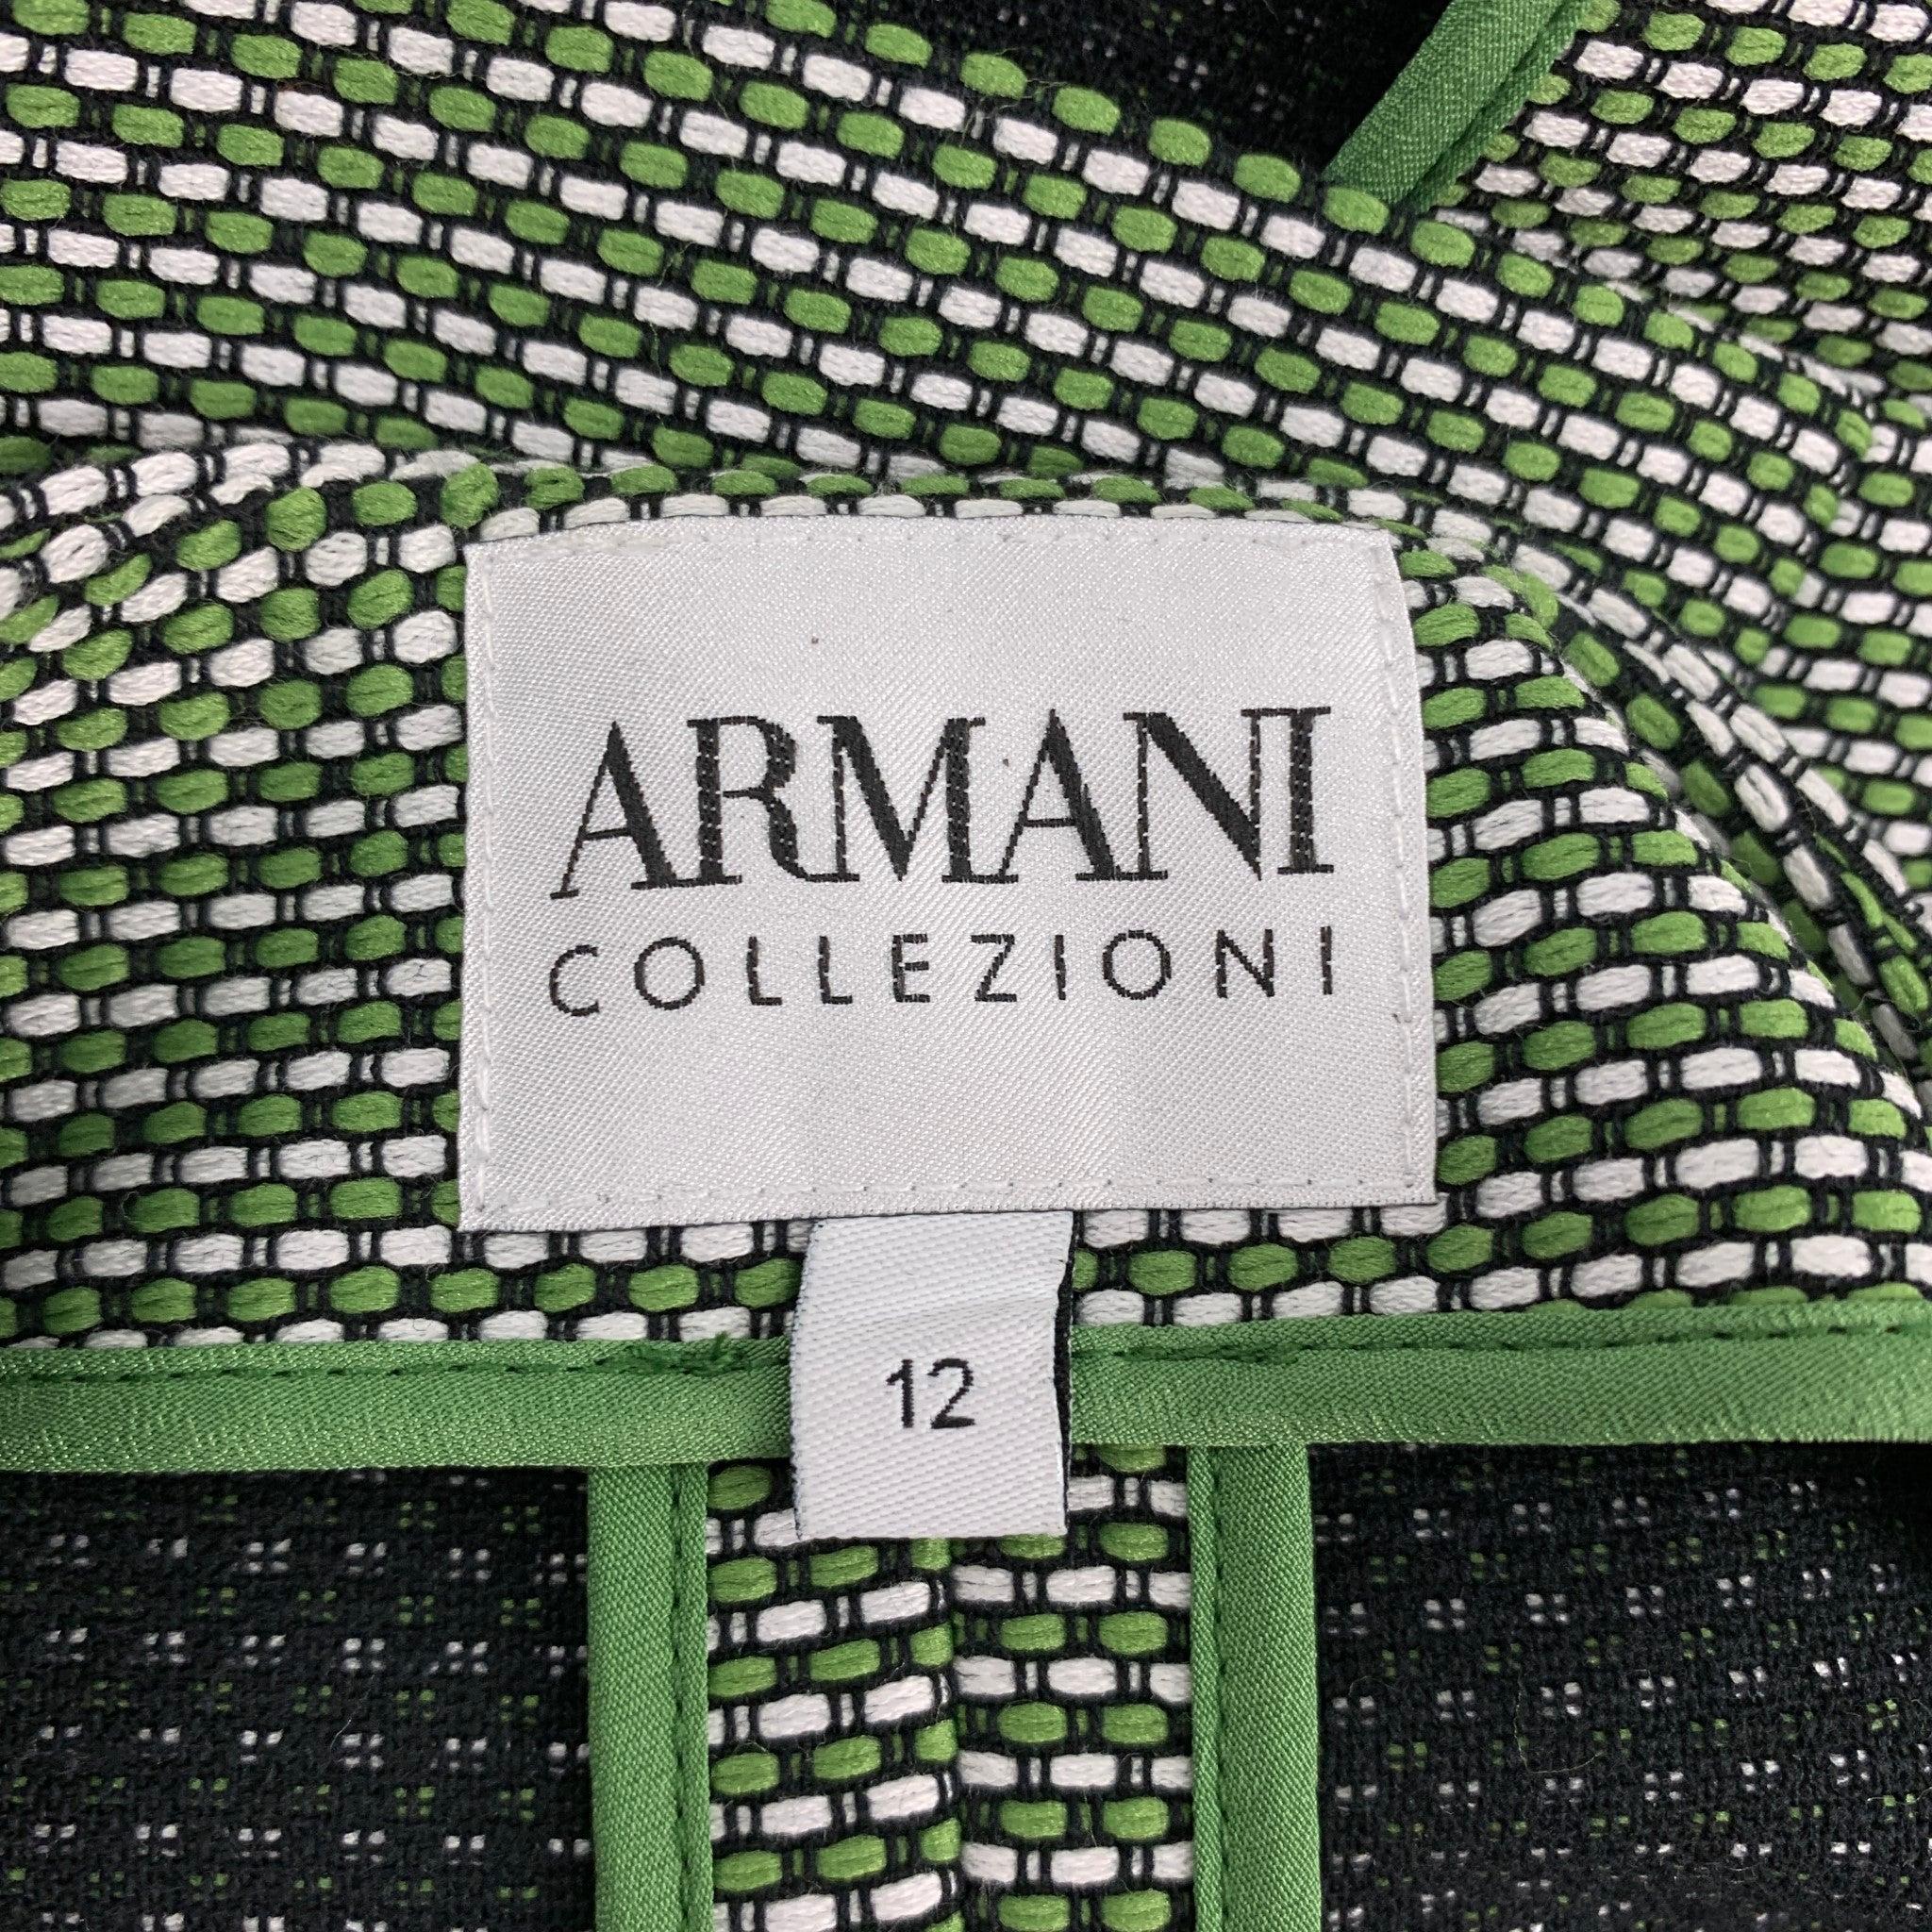 ARMANI COLLEZIONI Size 12 Green & White Woven Textured Cotton / Polyester Jacket 2